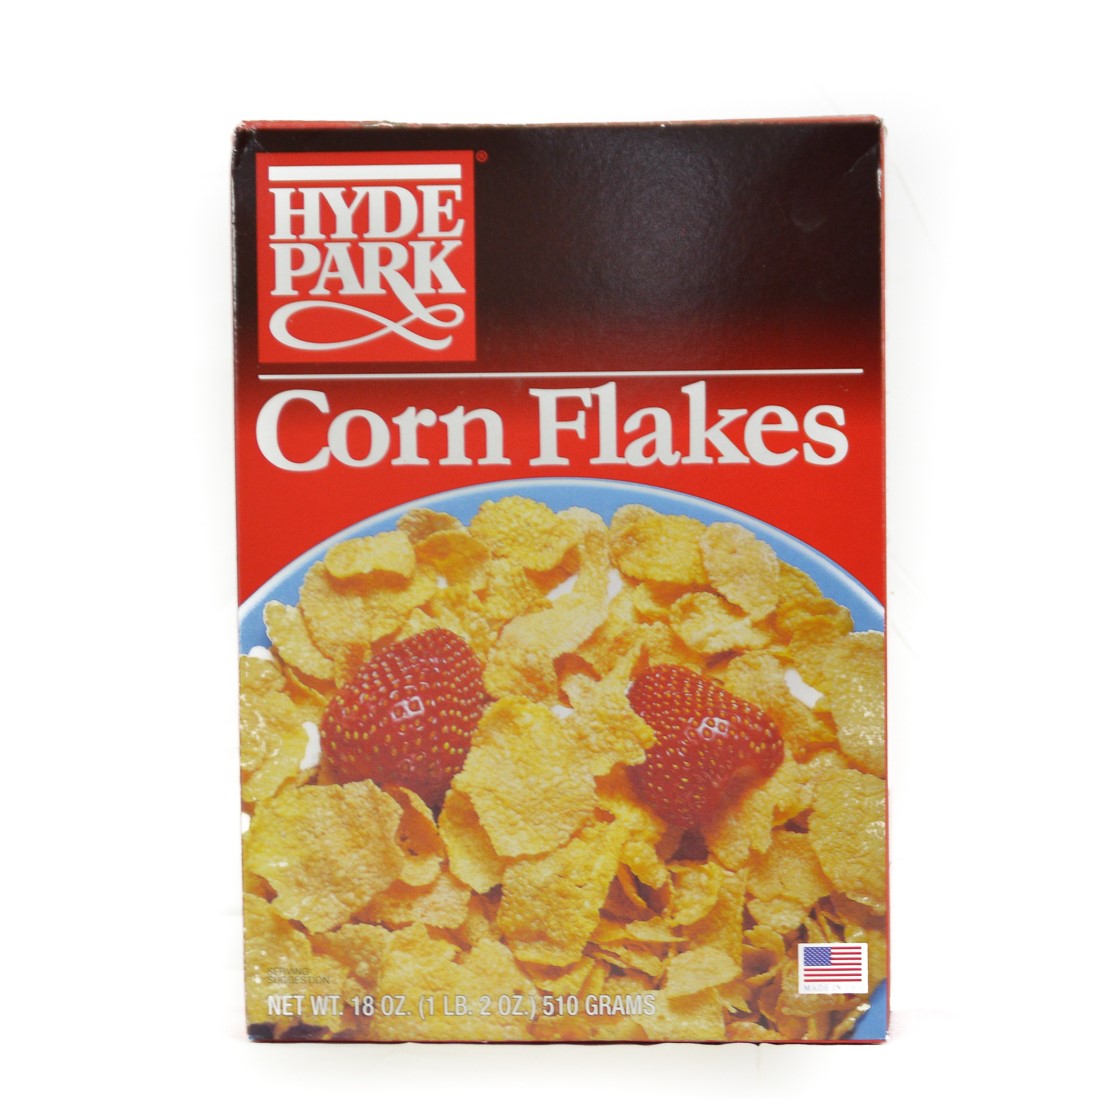 Corn Flakes Hyde Park (6 Boxes)